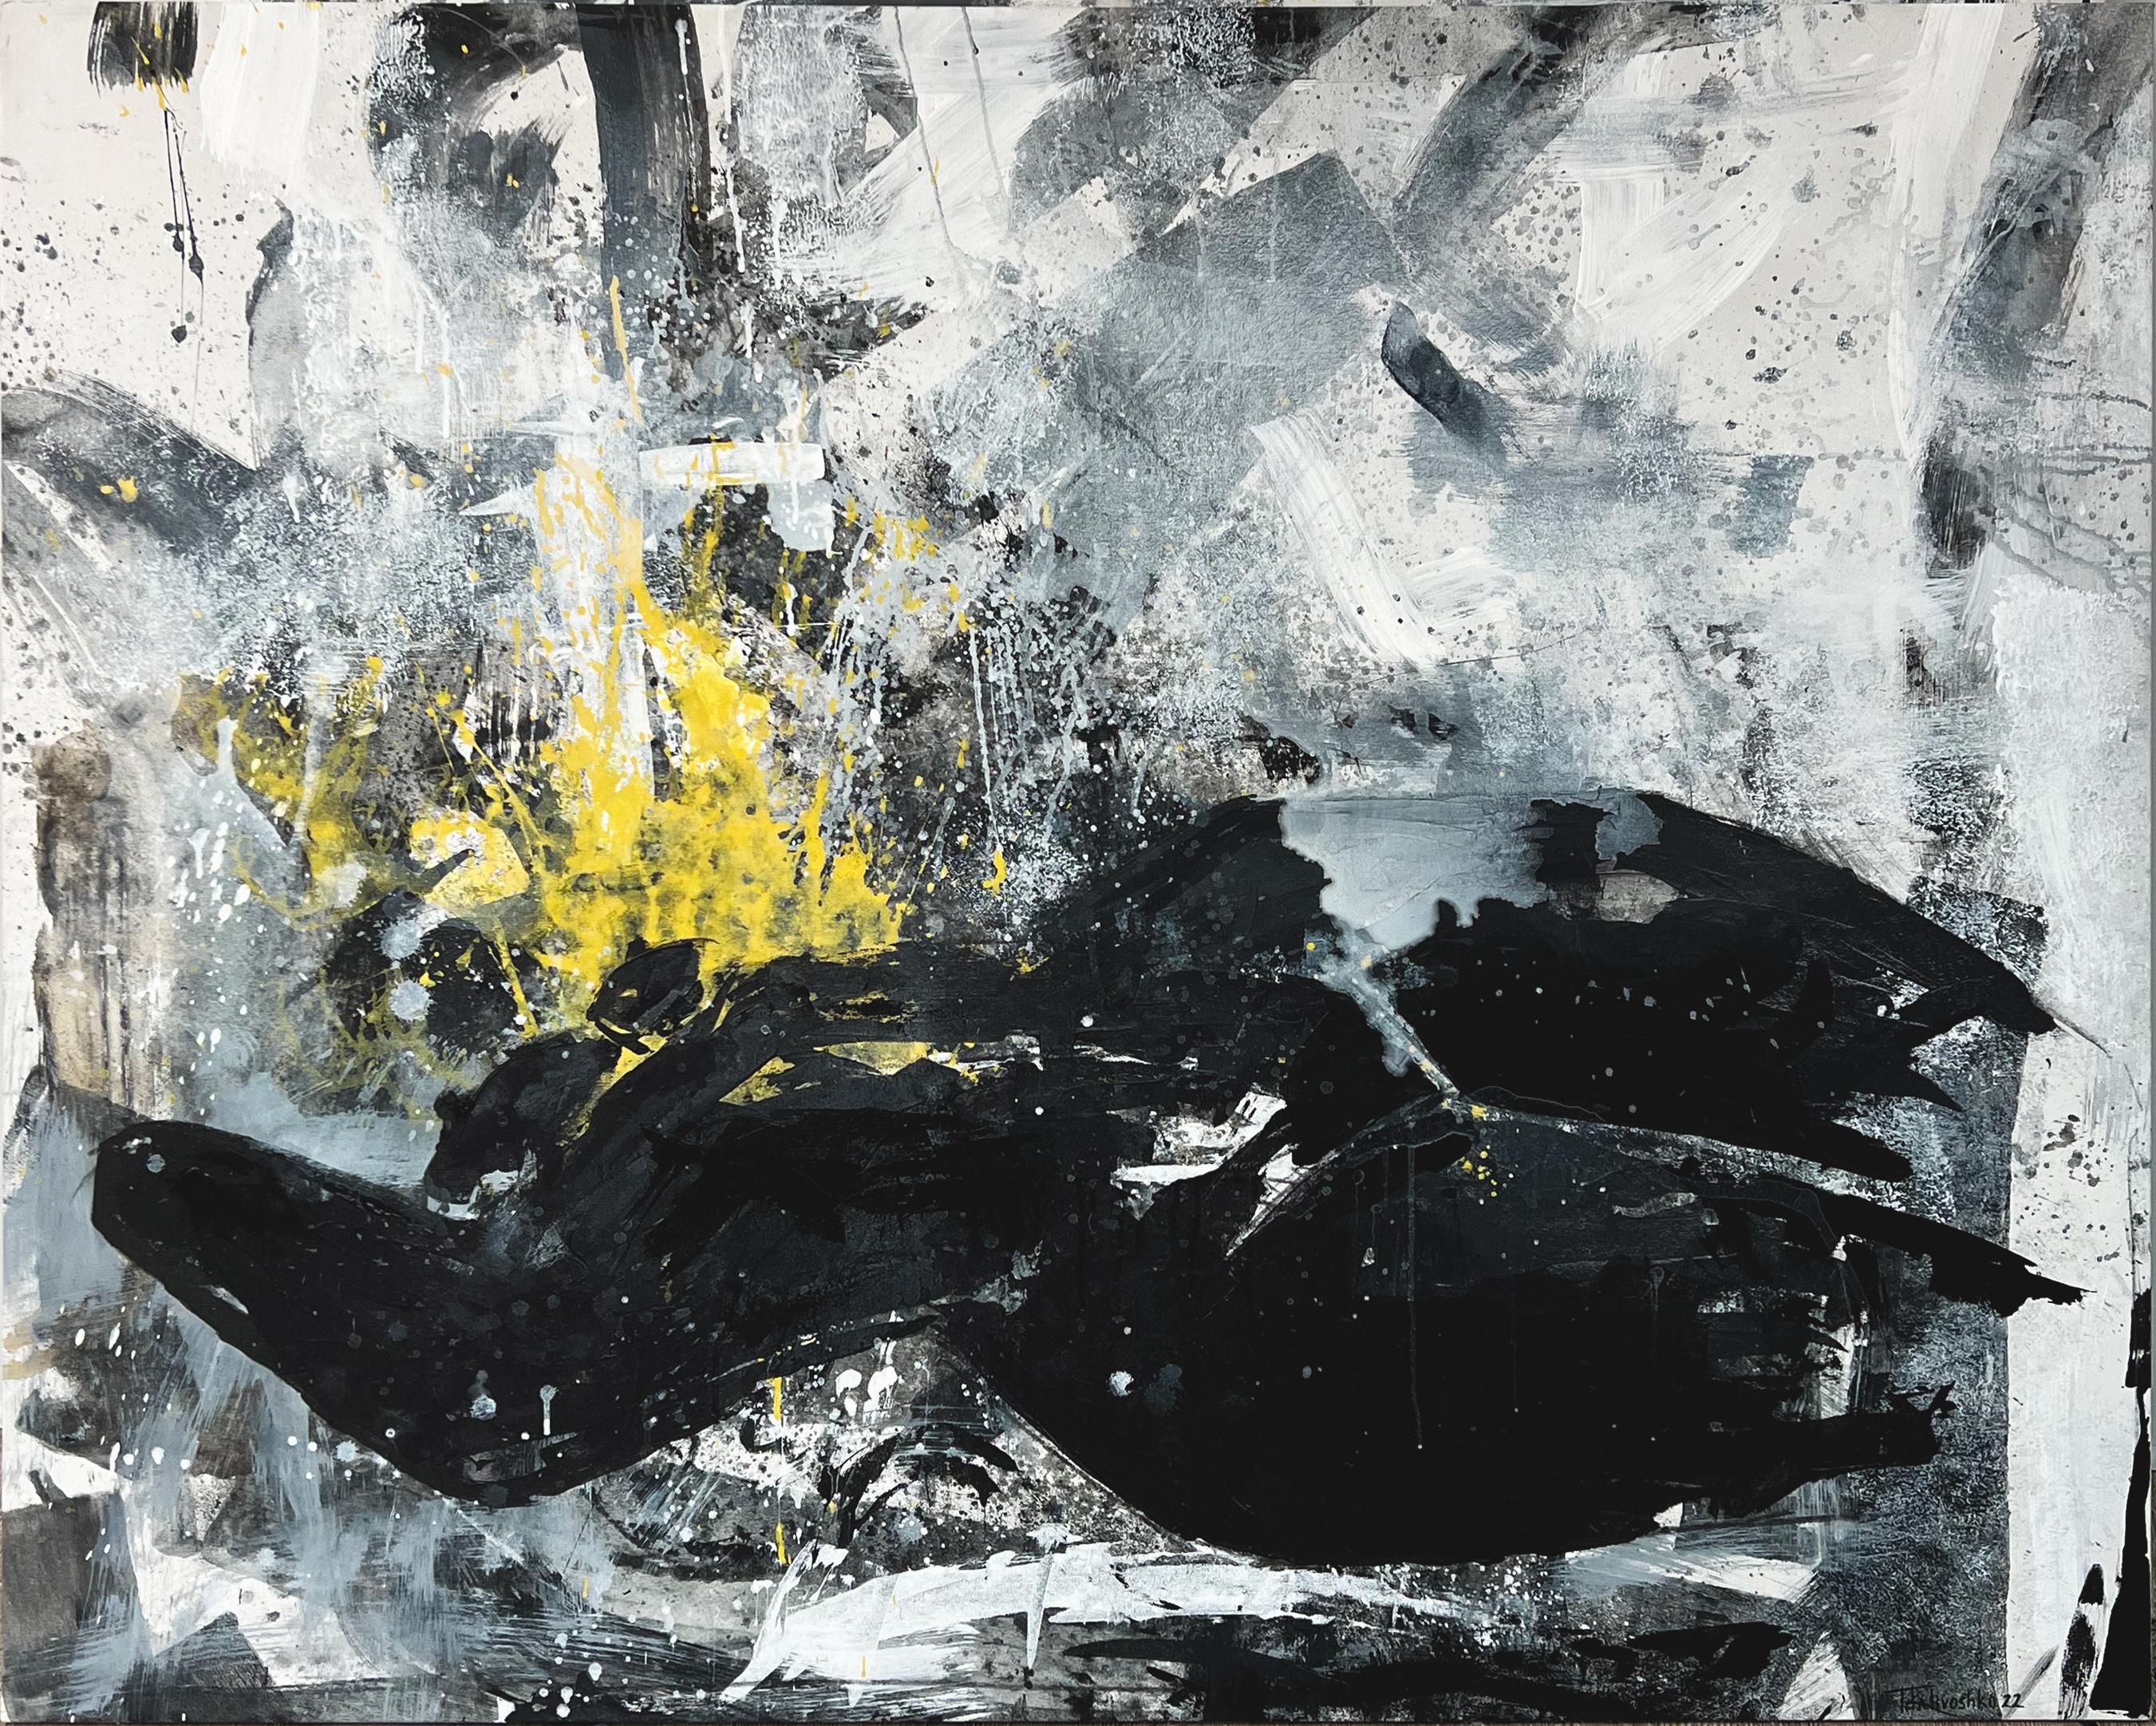 "Resiliance" Abstract Painting 50" x 63" inch by Tetiana Kalivoshko